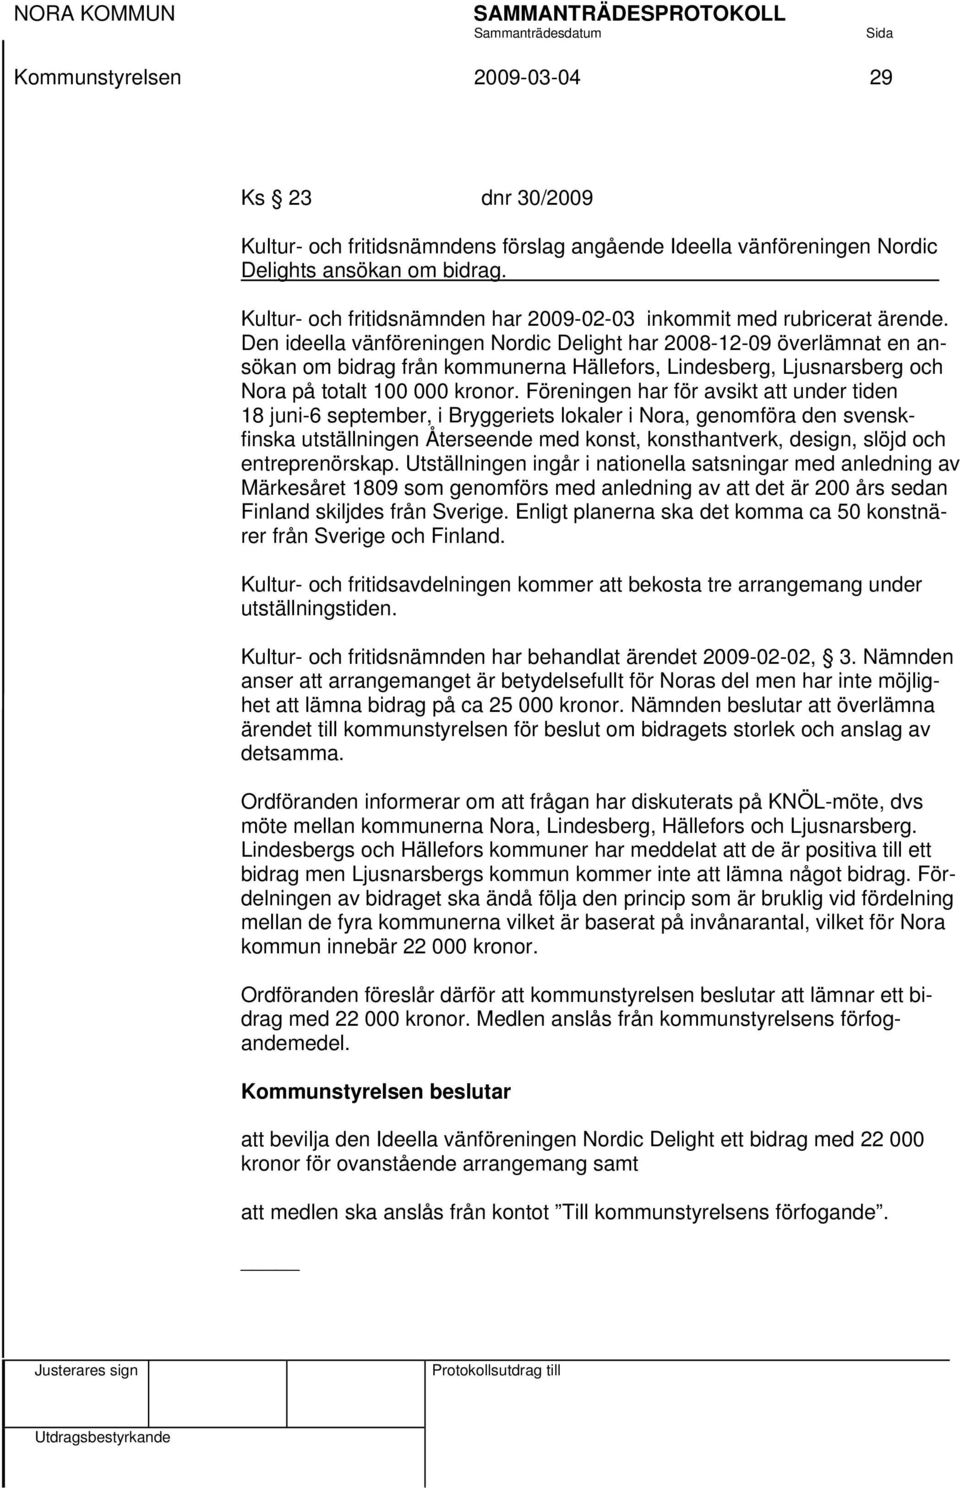 Den ideella vänföreningen Nordic Delight har 2008-12-09 överlämnat en ansökan om bidrag från kommunerna Hällefors, Lindesberg, Ljusnarsberg och Nora på totalt 100 000 kronor.